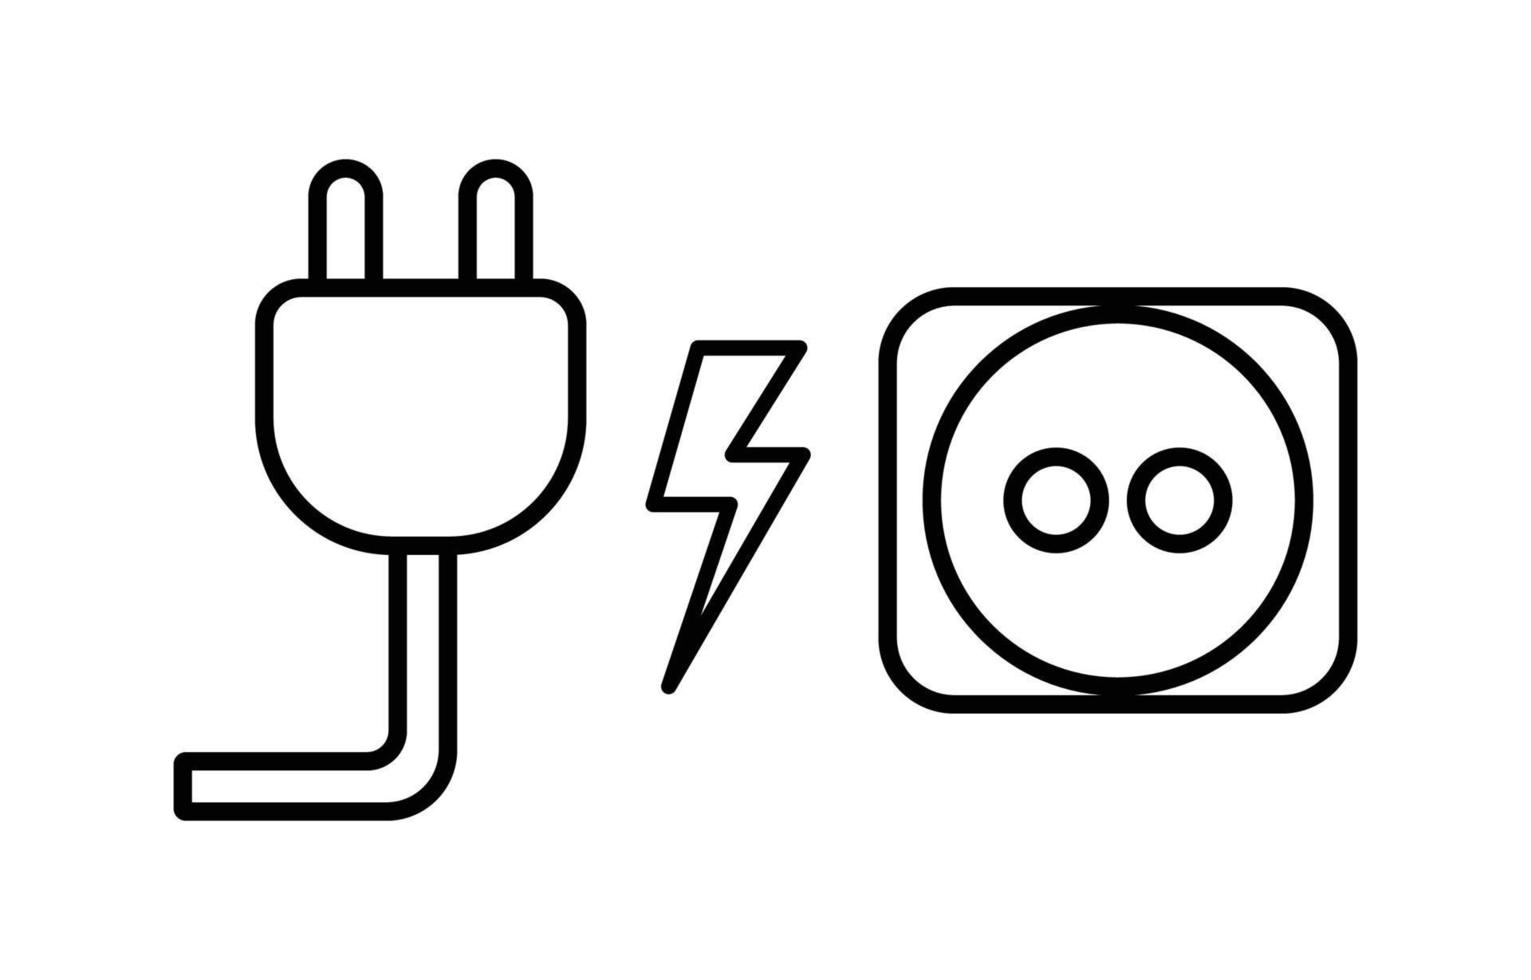 icônes d'électricité de prise et de prise sur fond blanc, image vectorielle, relatives à l'illustration du courant de câblage électrique vecteur